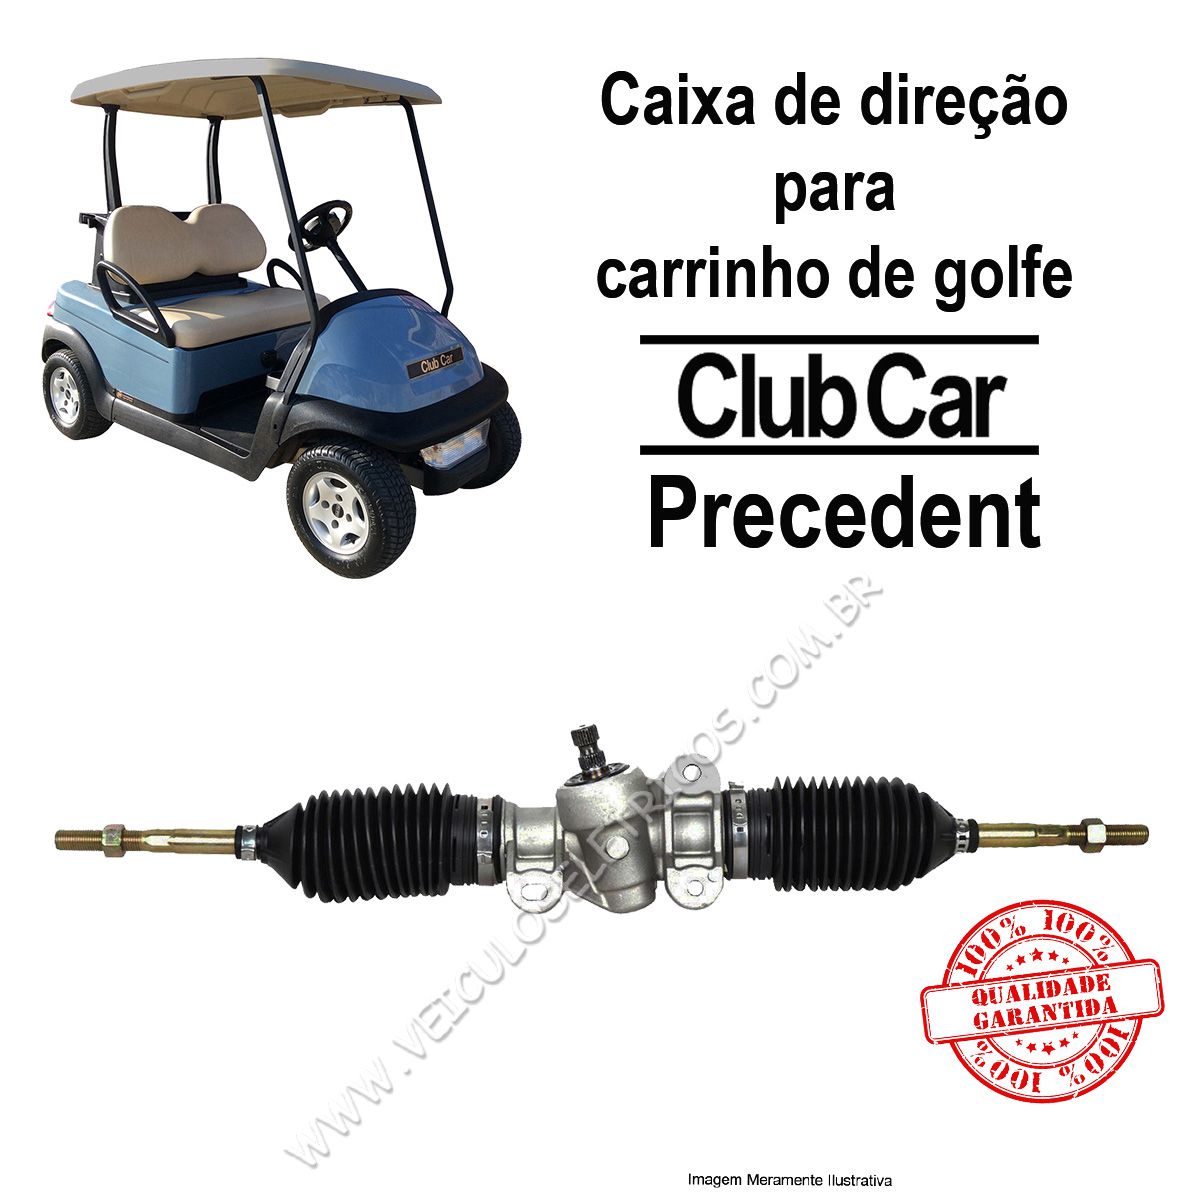 Caixa de direção para carrinho de golfe club Car Precedent